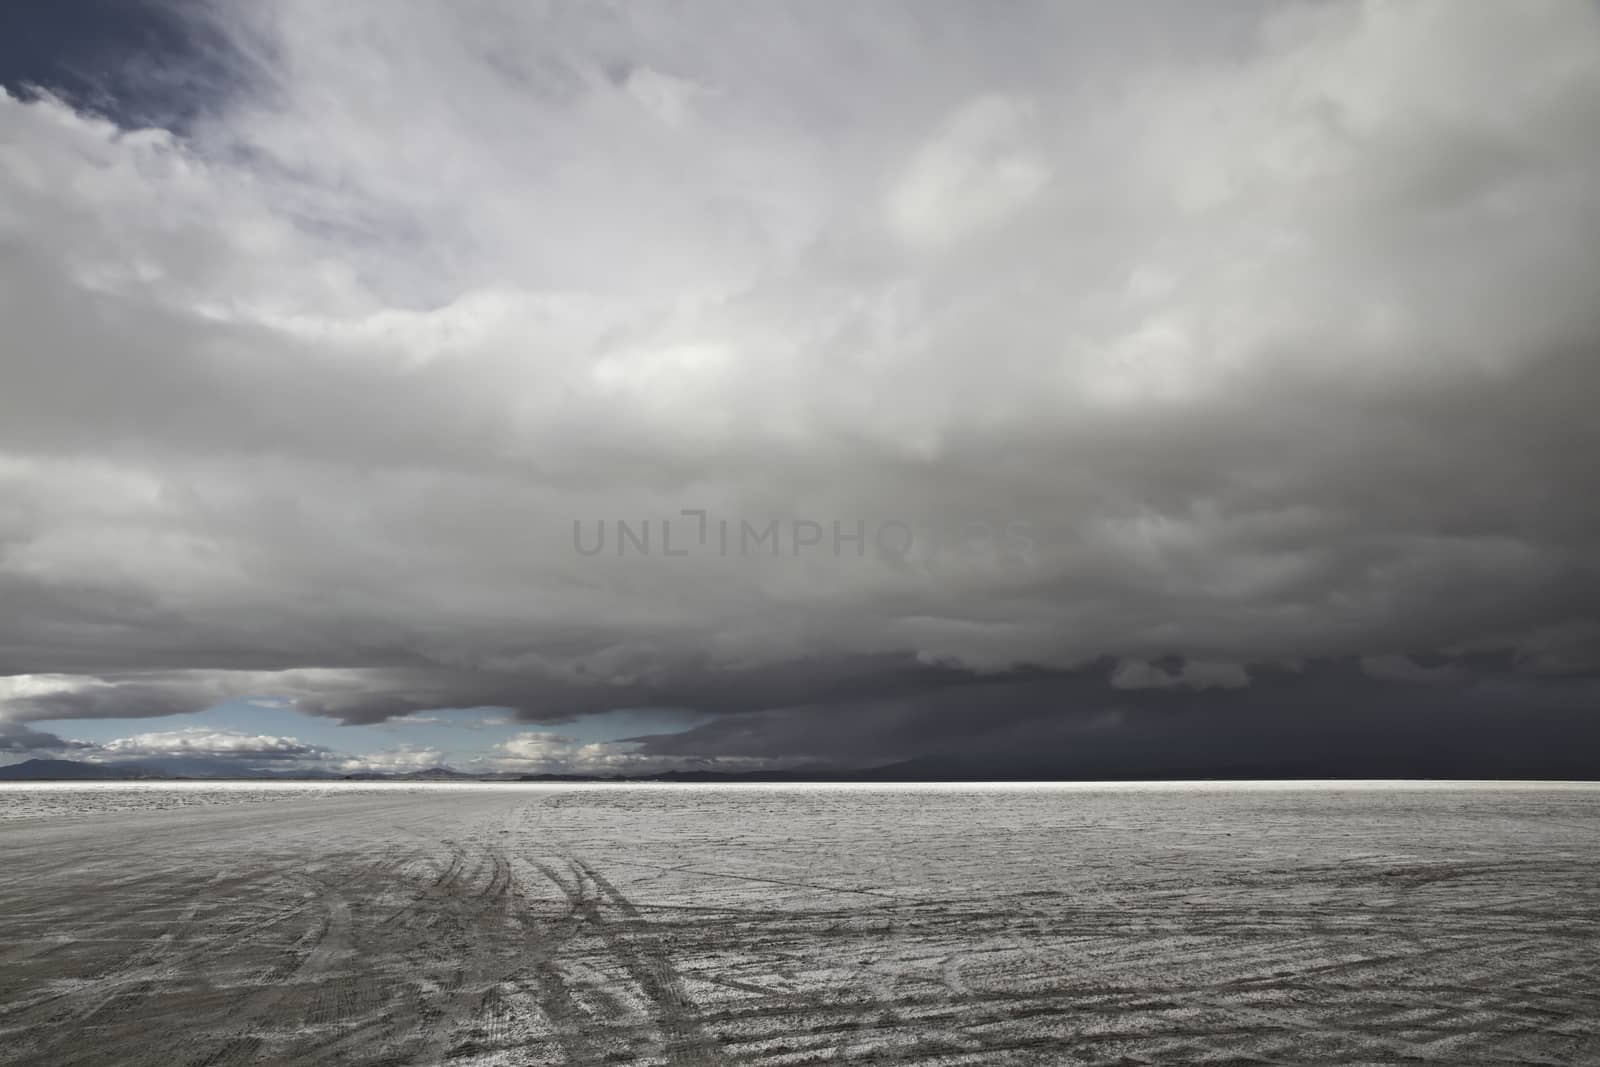 Wendover, Bonneville Salt Flats, Utah, United States